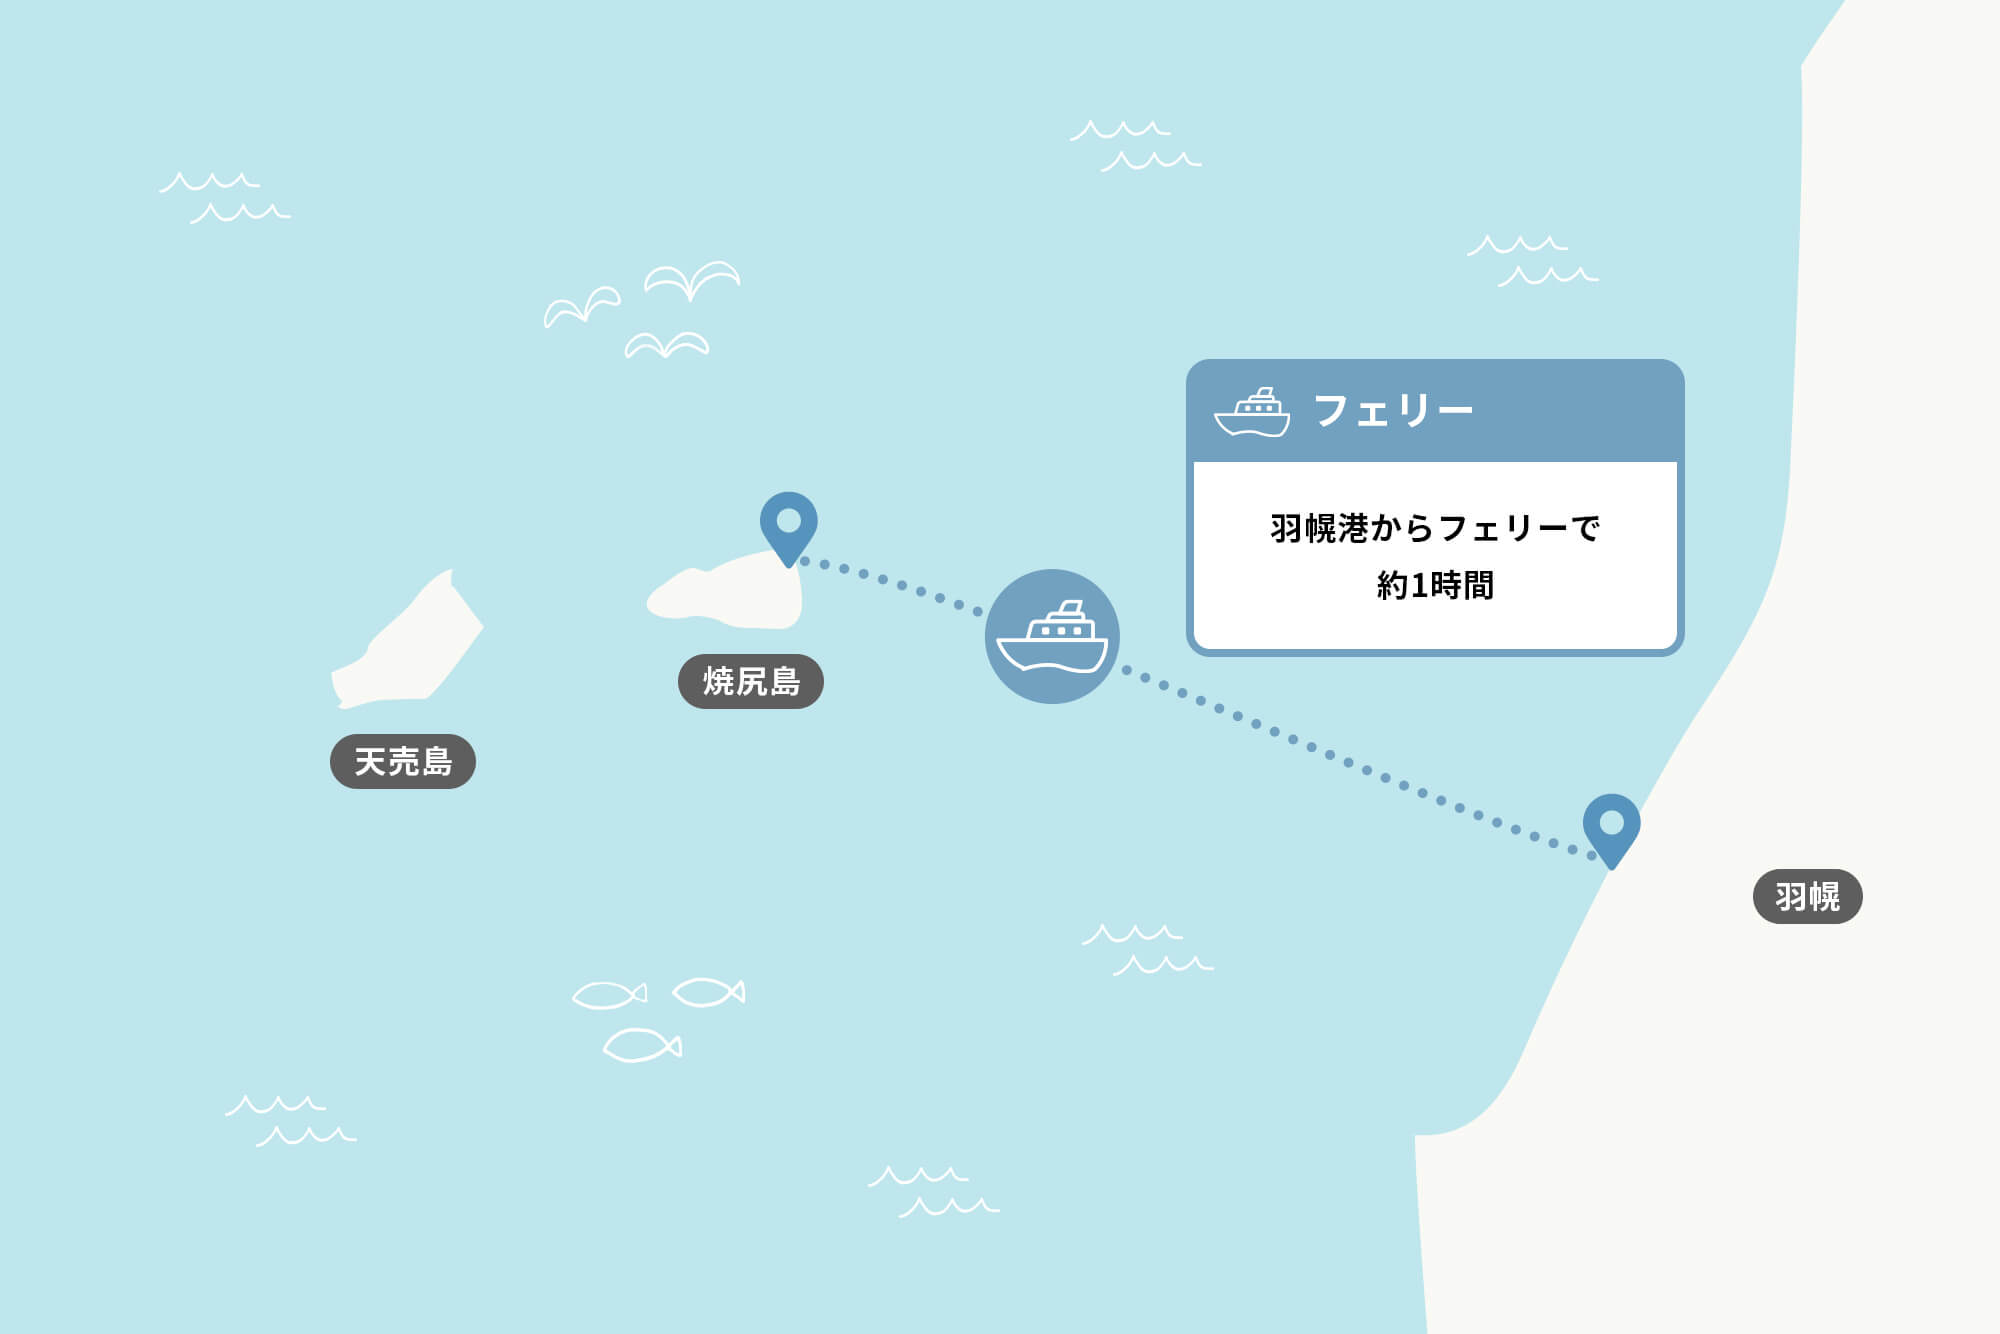 焼尻島へのアクセス方法